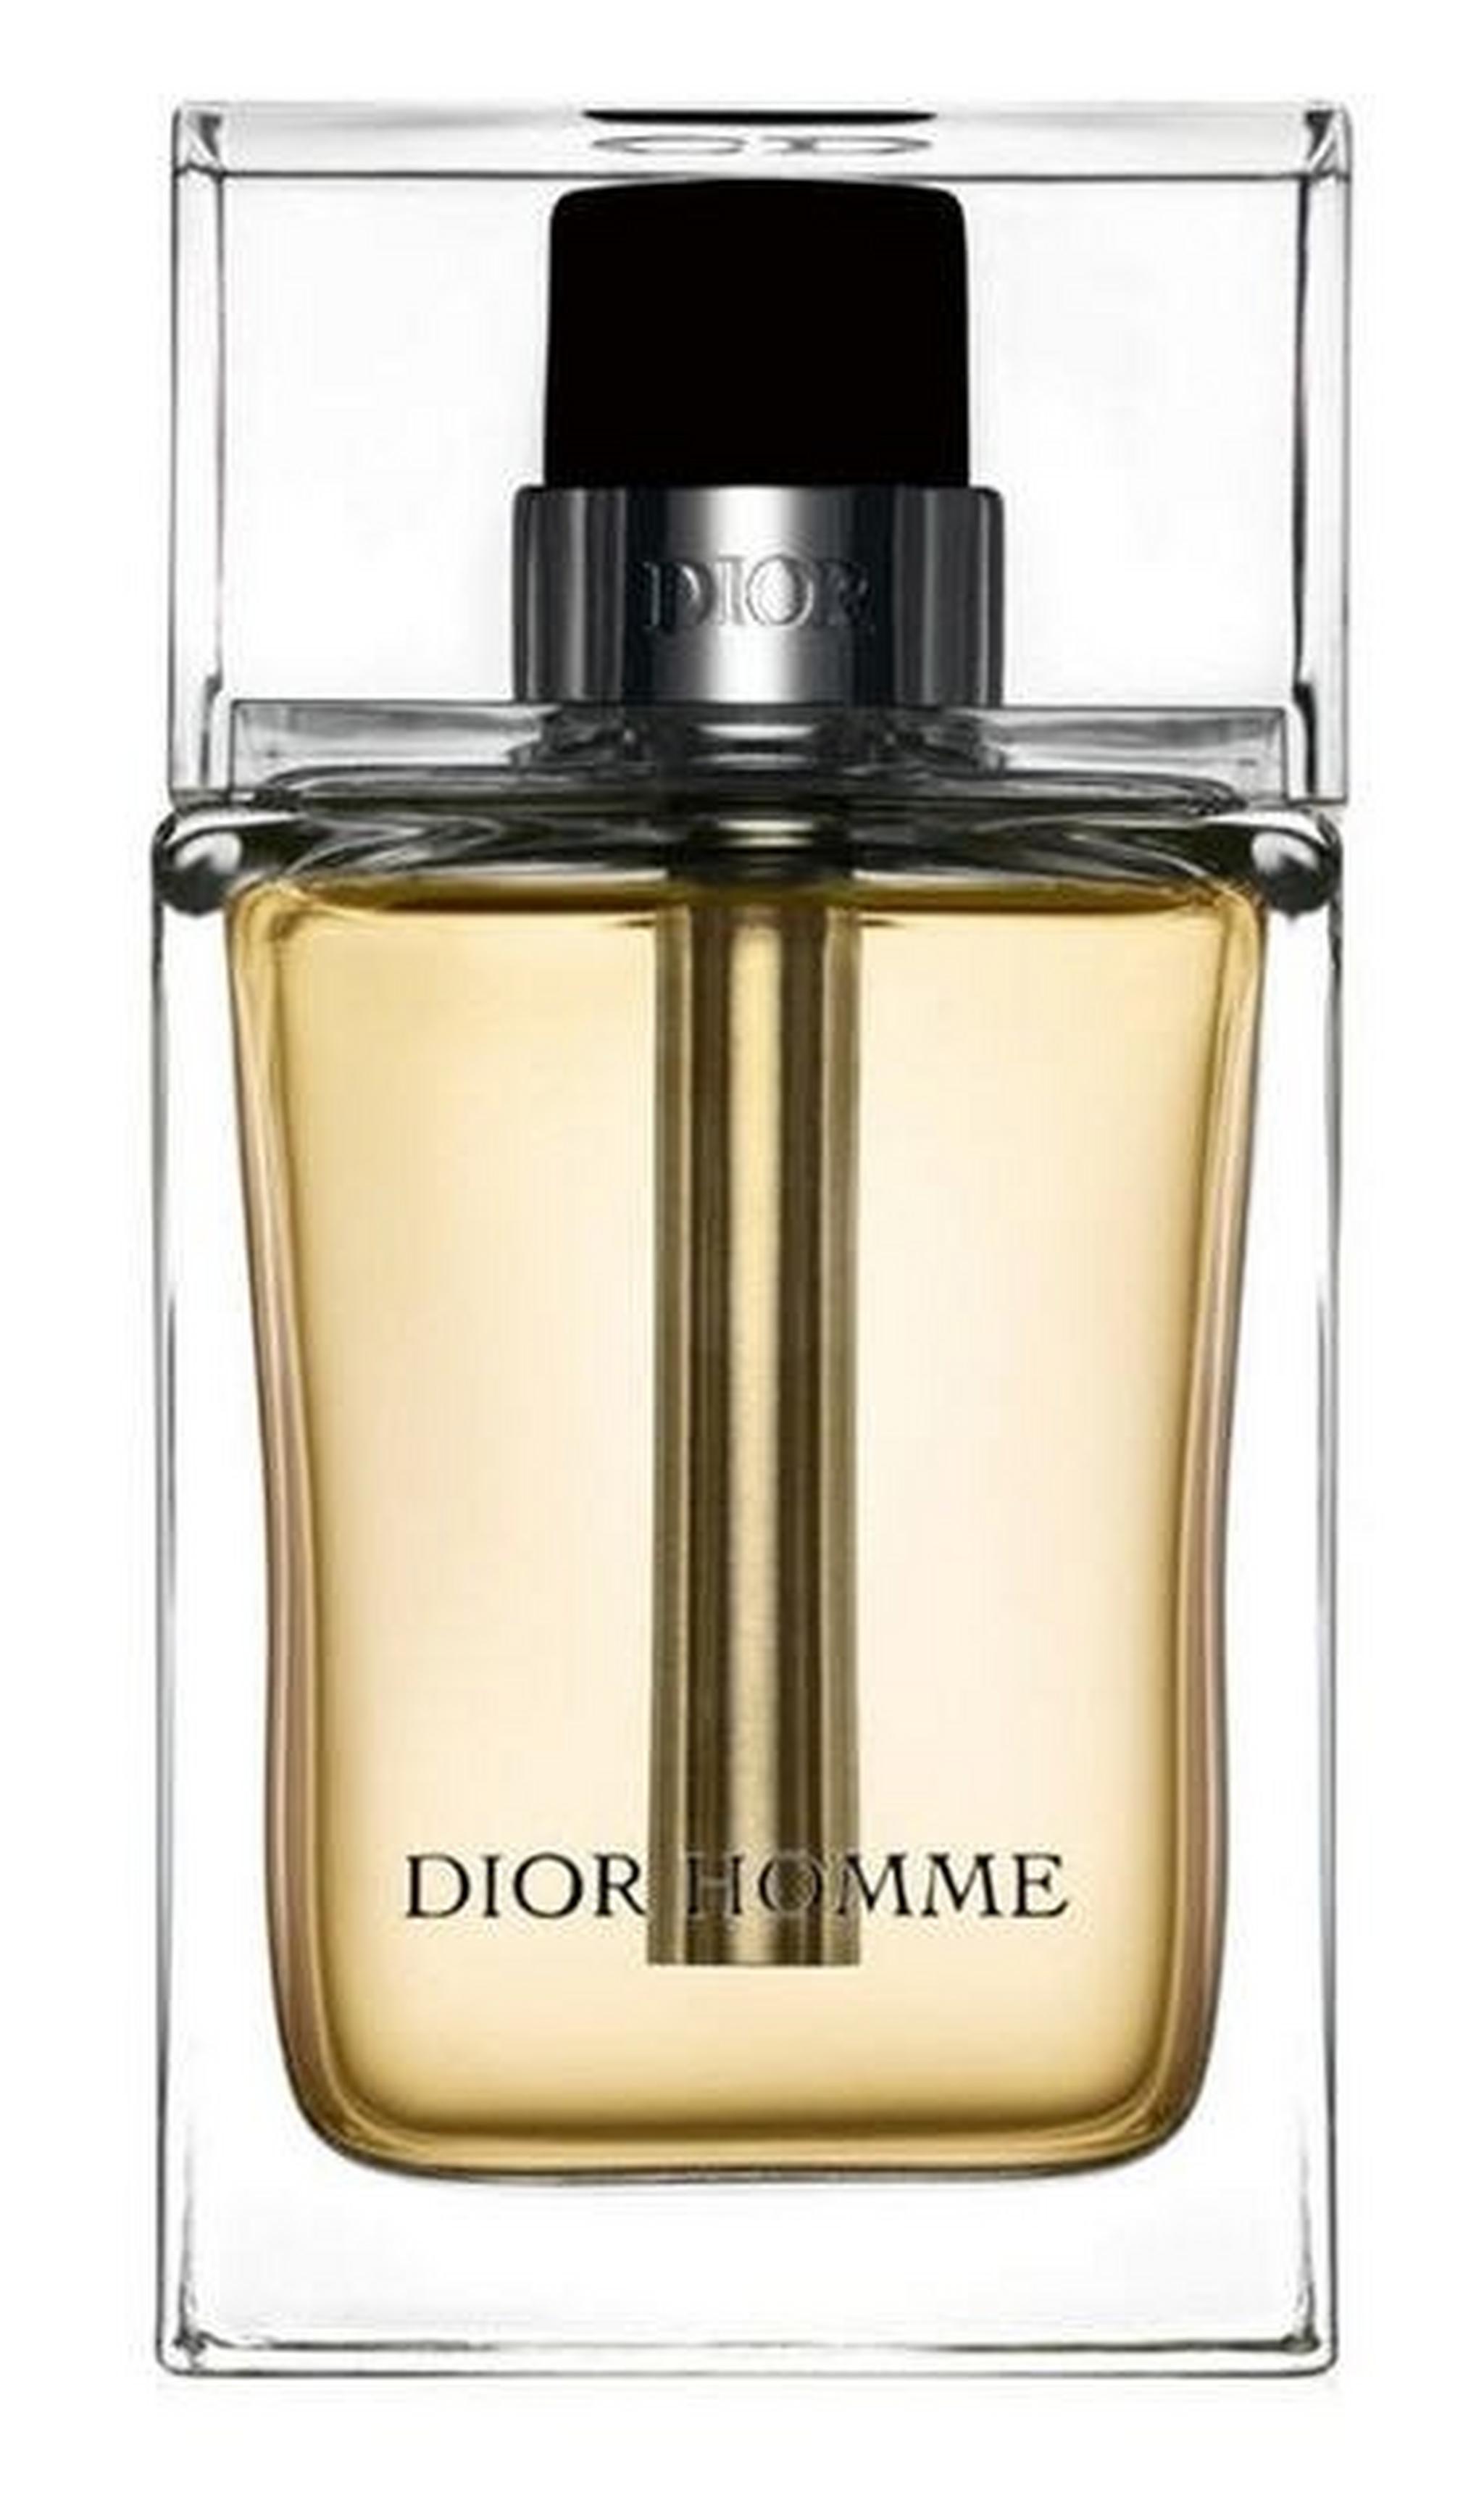 Homme by Christian Dior for Men 100 mL Eau de Toilette